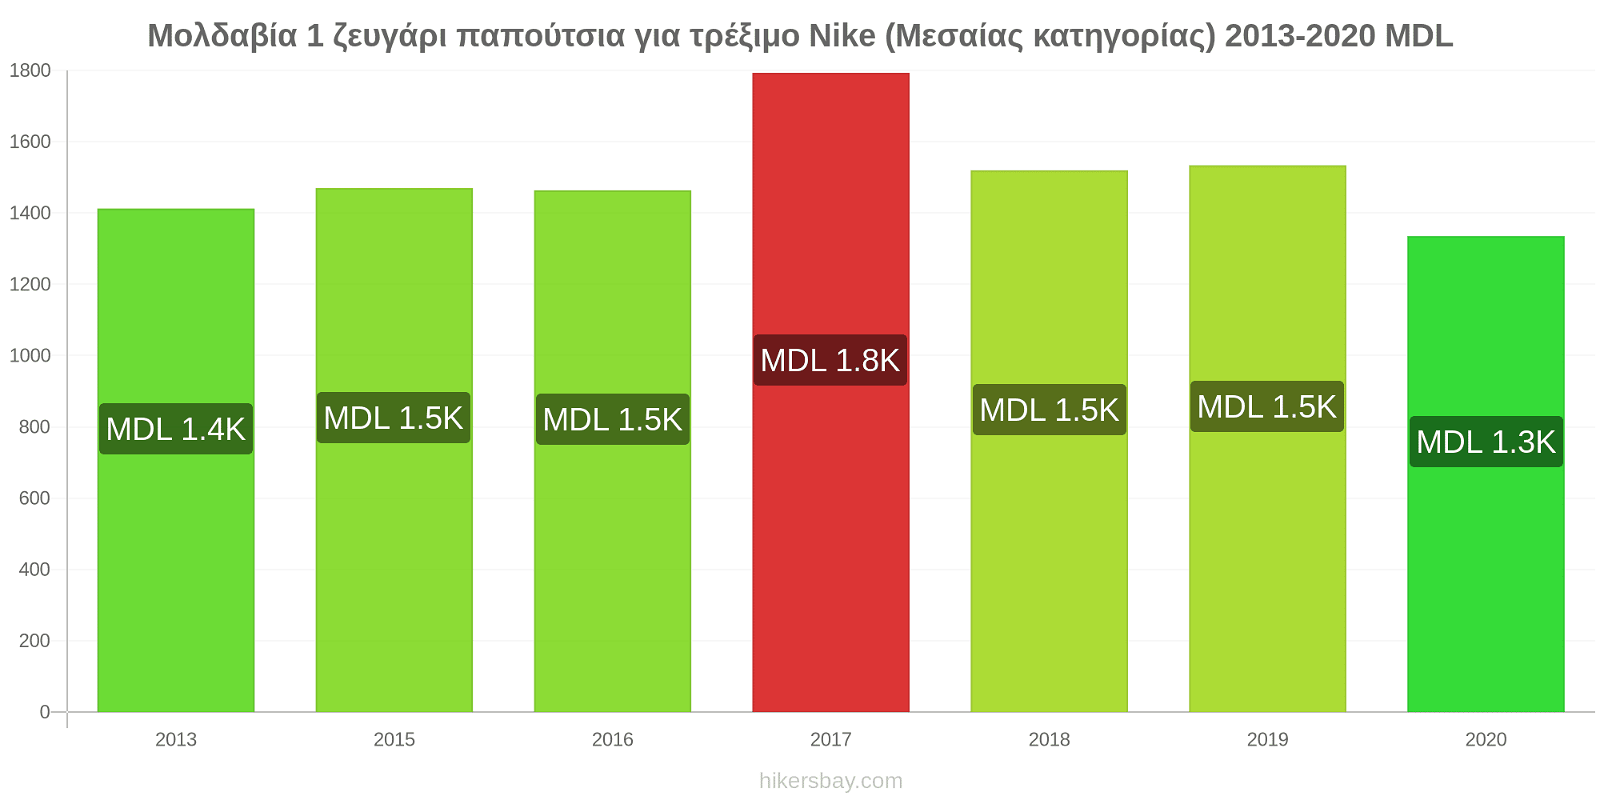 Μολδαβία αλλαγές τιμών 1 ζευγάρι παπούτσια για τρέξιμο Nike (Μεσαίας κατηγορίας) hikersbay.com